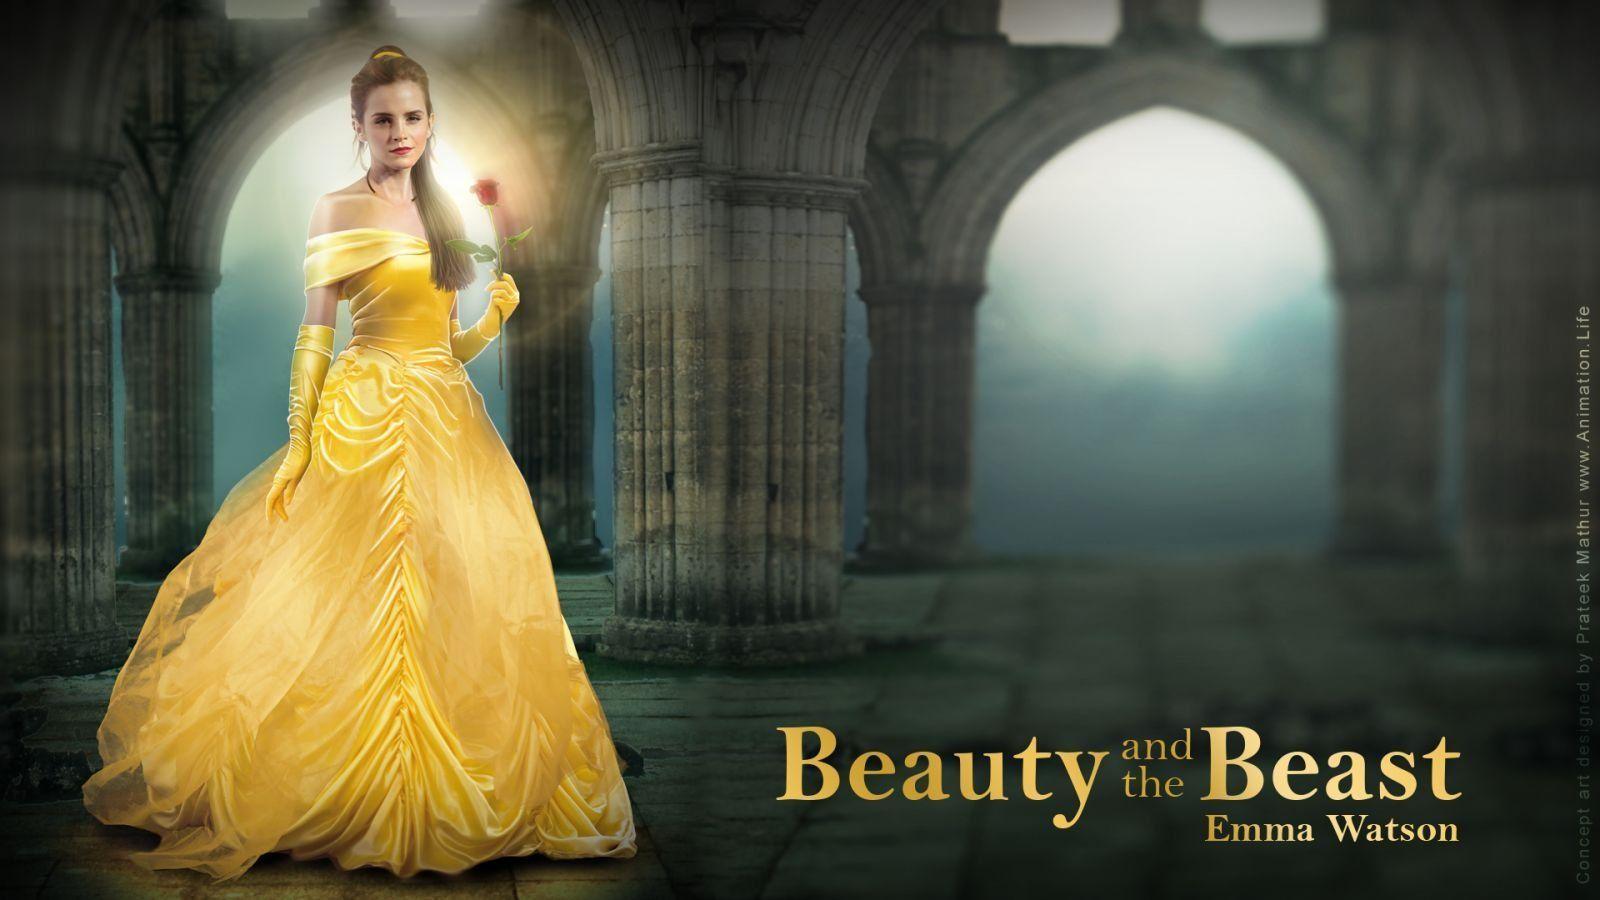 Emma Watson &;Beauty and the Beast&; Belle image is fan art